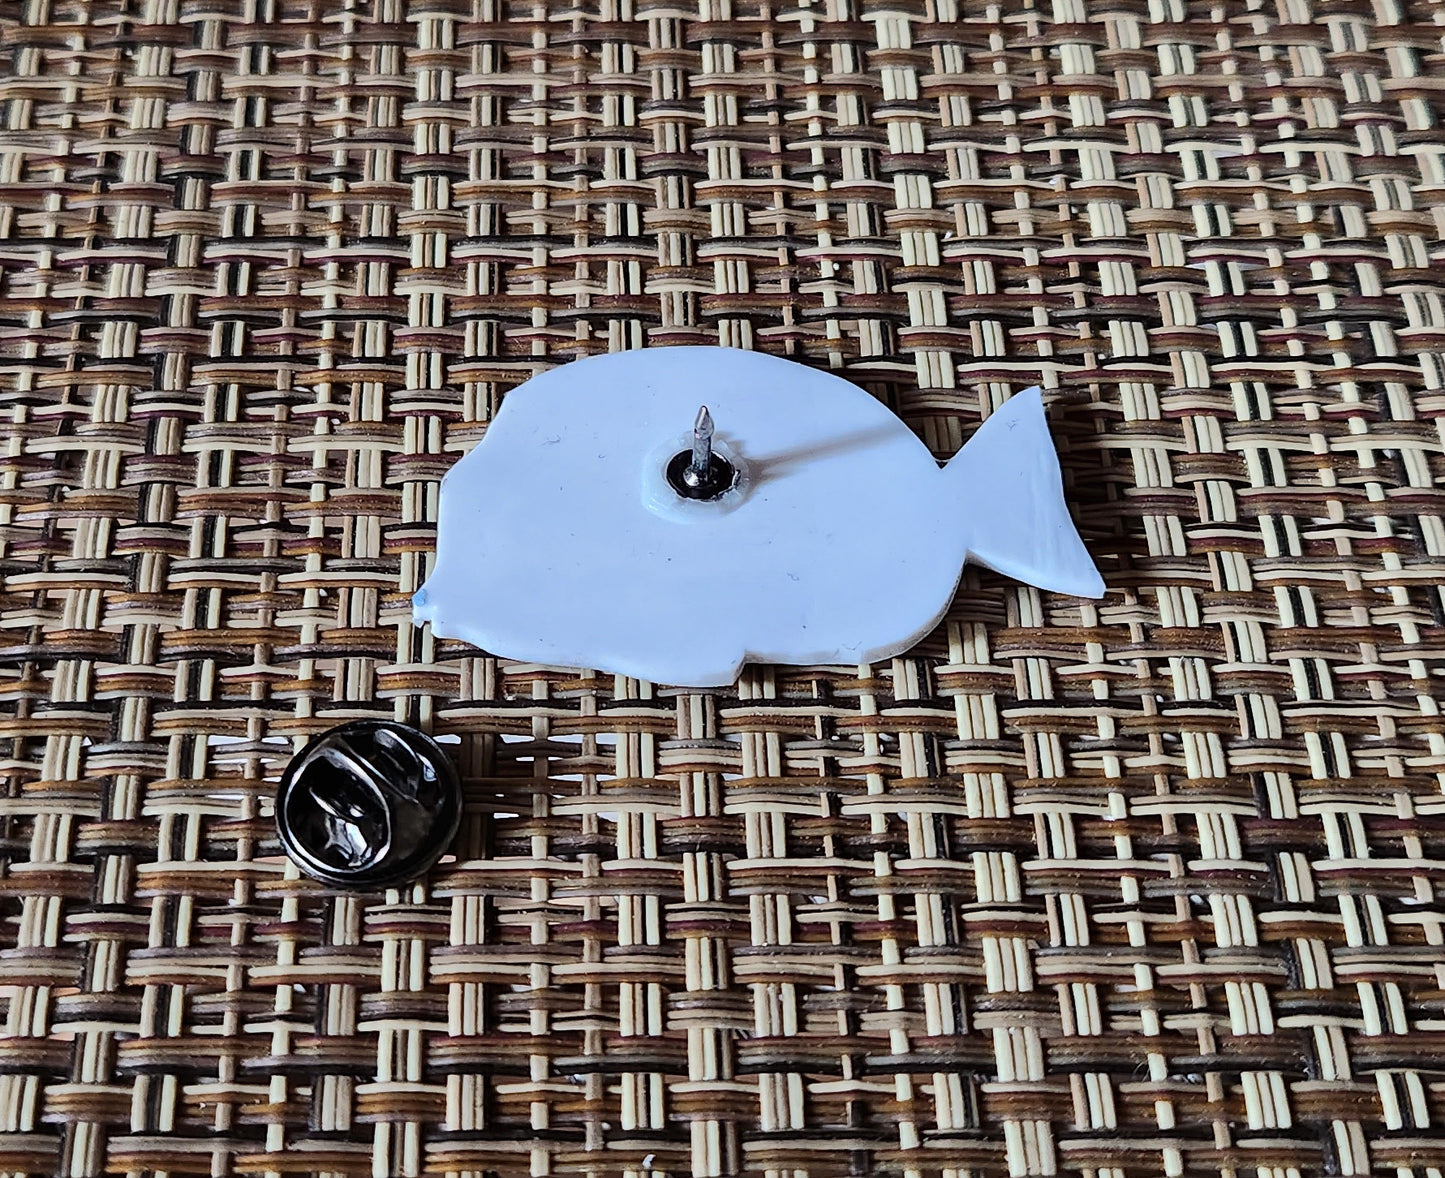 Powder Blue Tang - Resin Coated Polystyrene Pin - 100% Handmade Fish Pin, Saltwater Reef Fish Pin